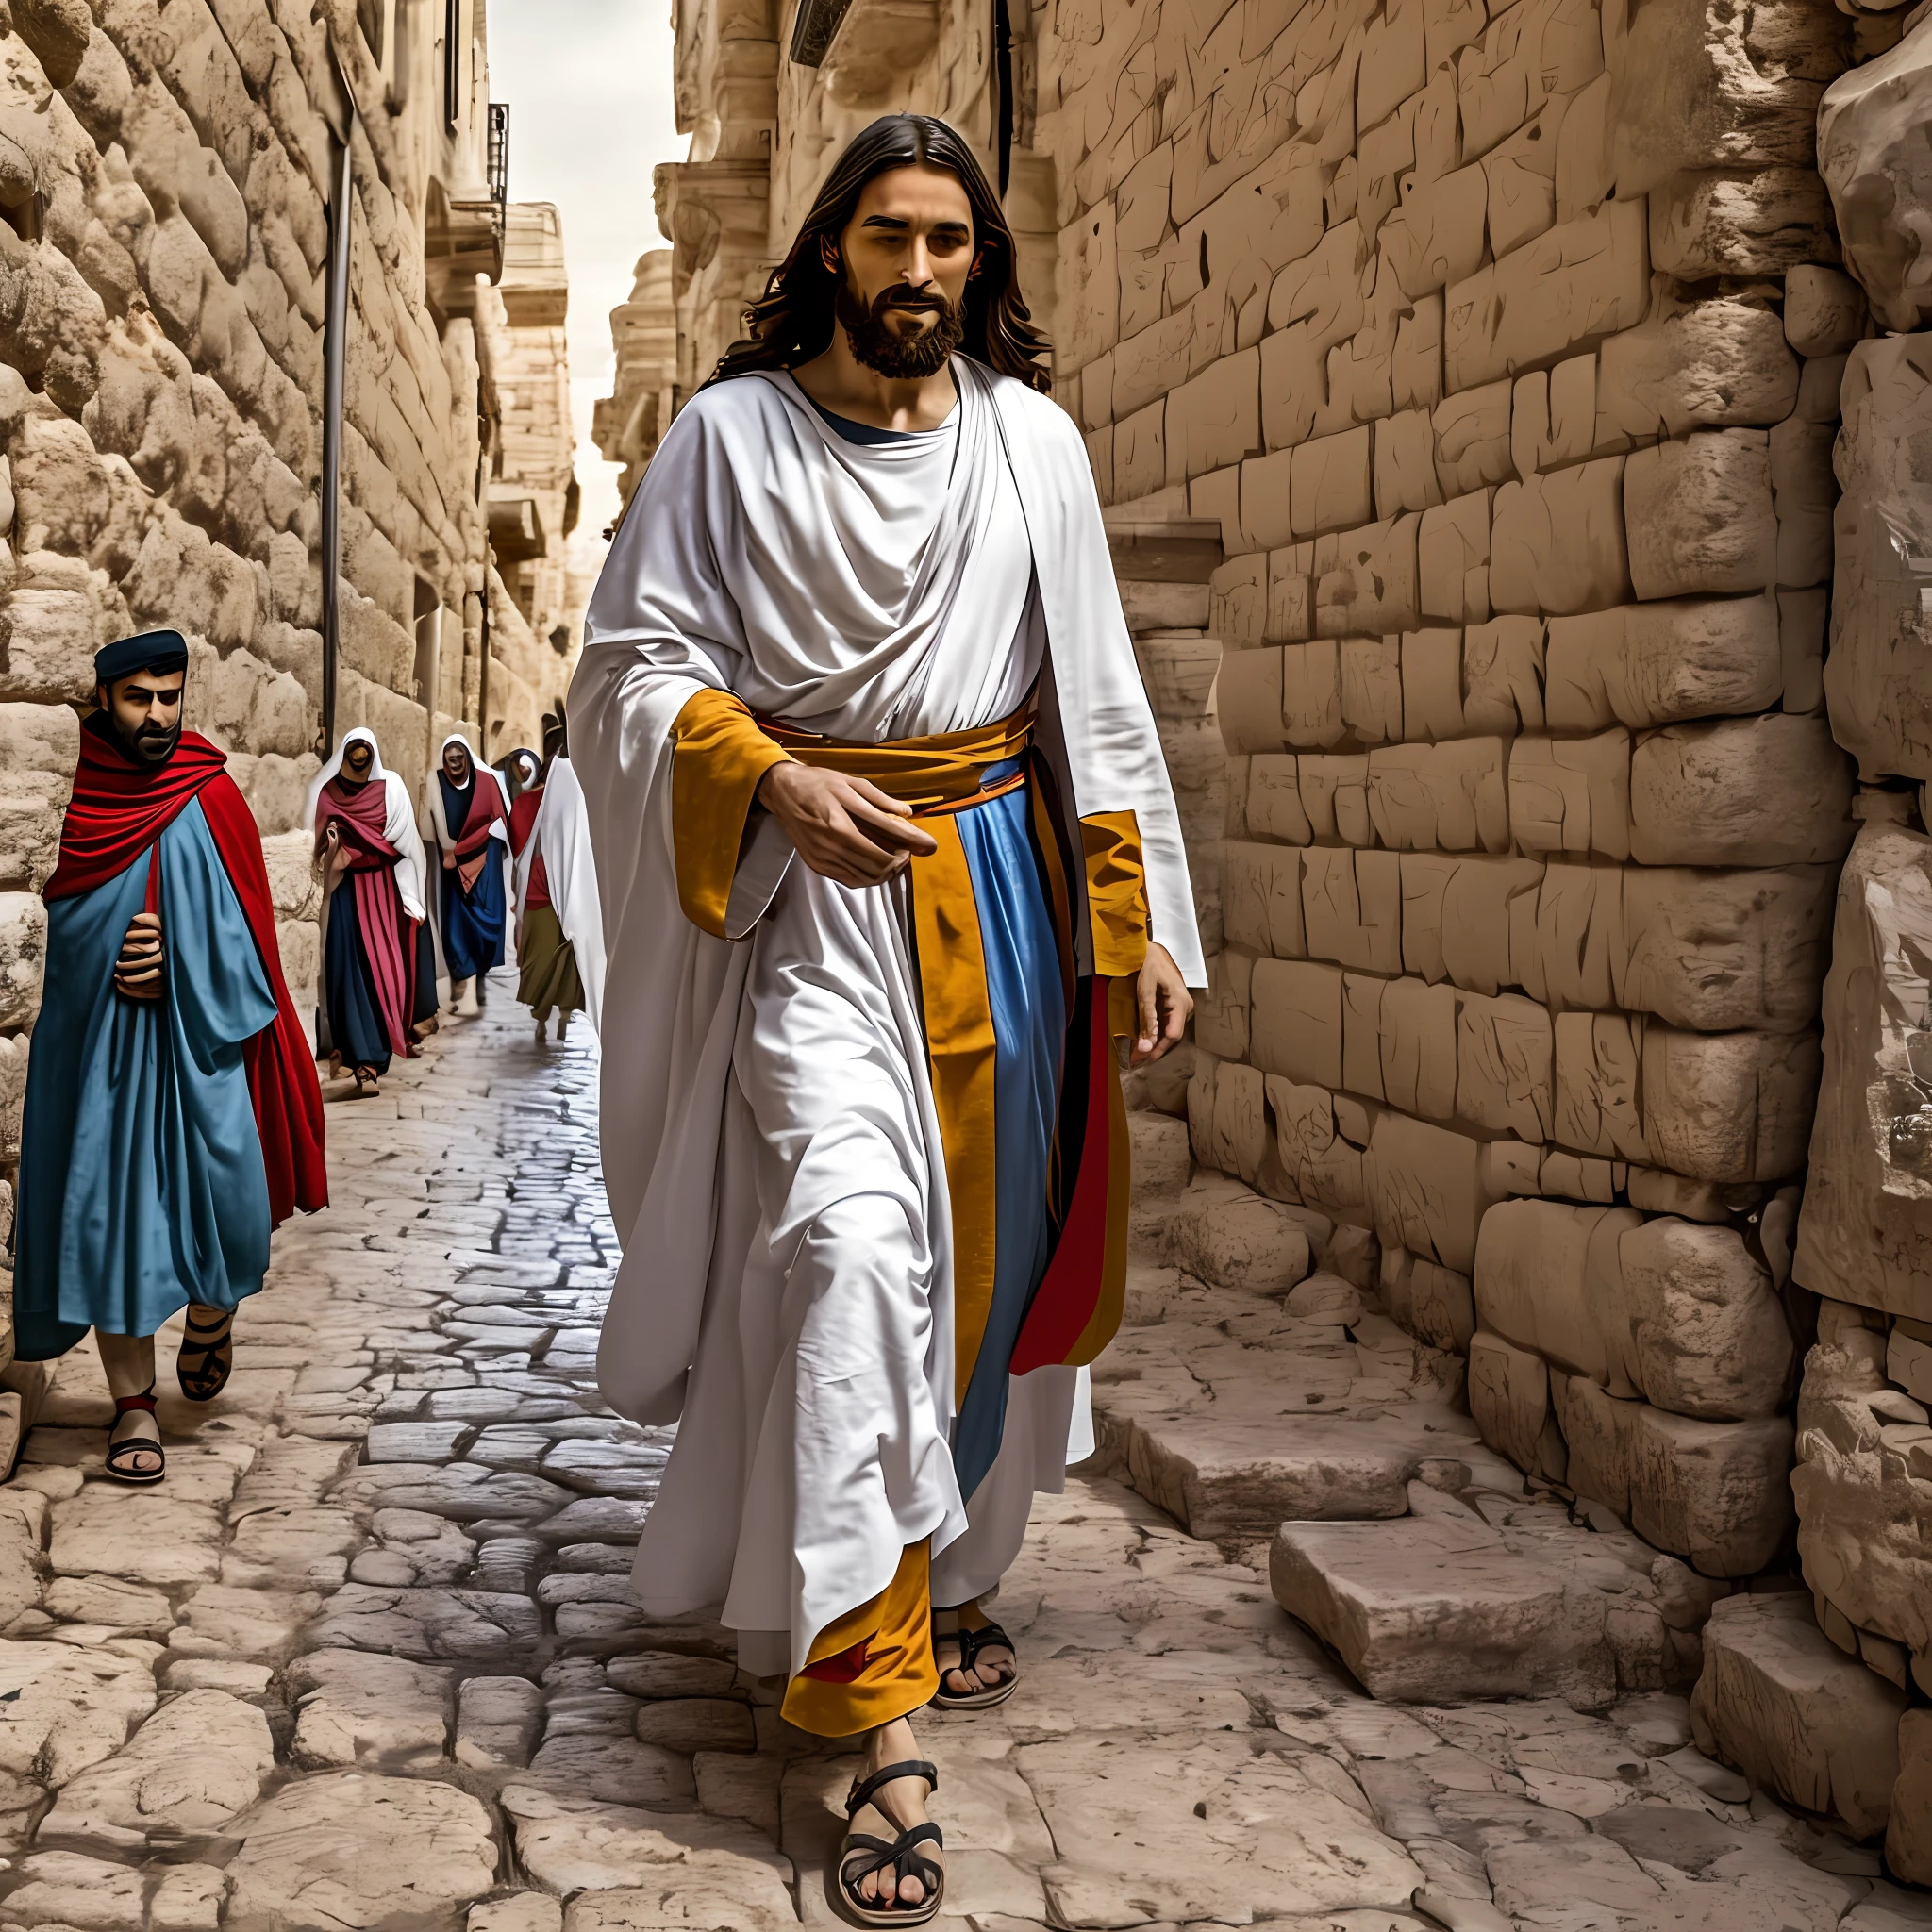 يسوع الناصري 33 سنة, شخصية الكتاب المقدس, المشي في مدينة القدس, وقت الكتاب المقدس --تلقائي --s2